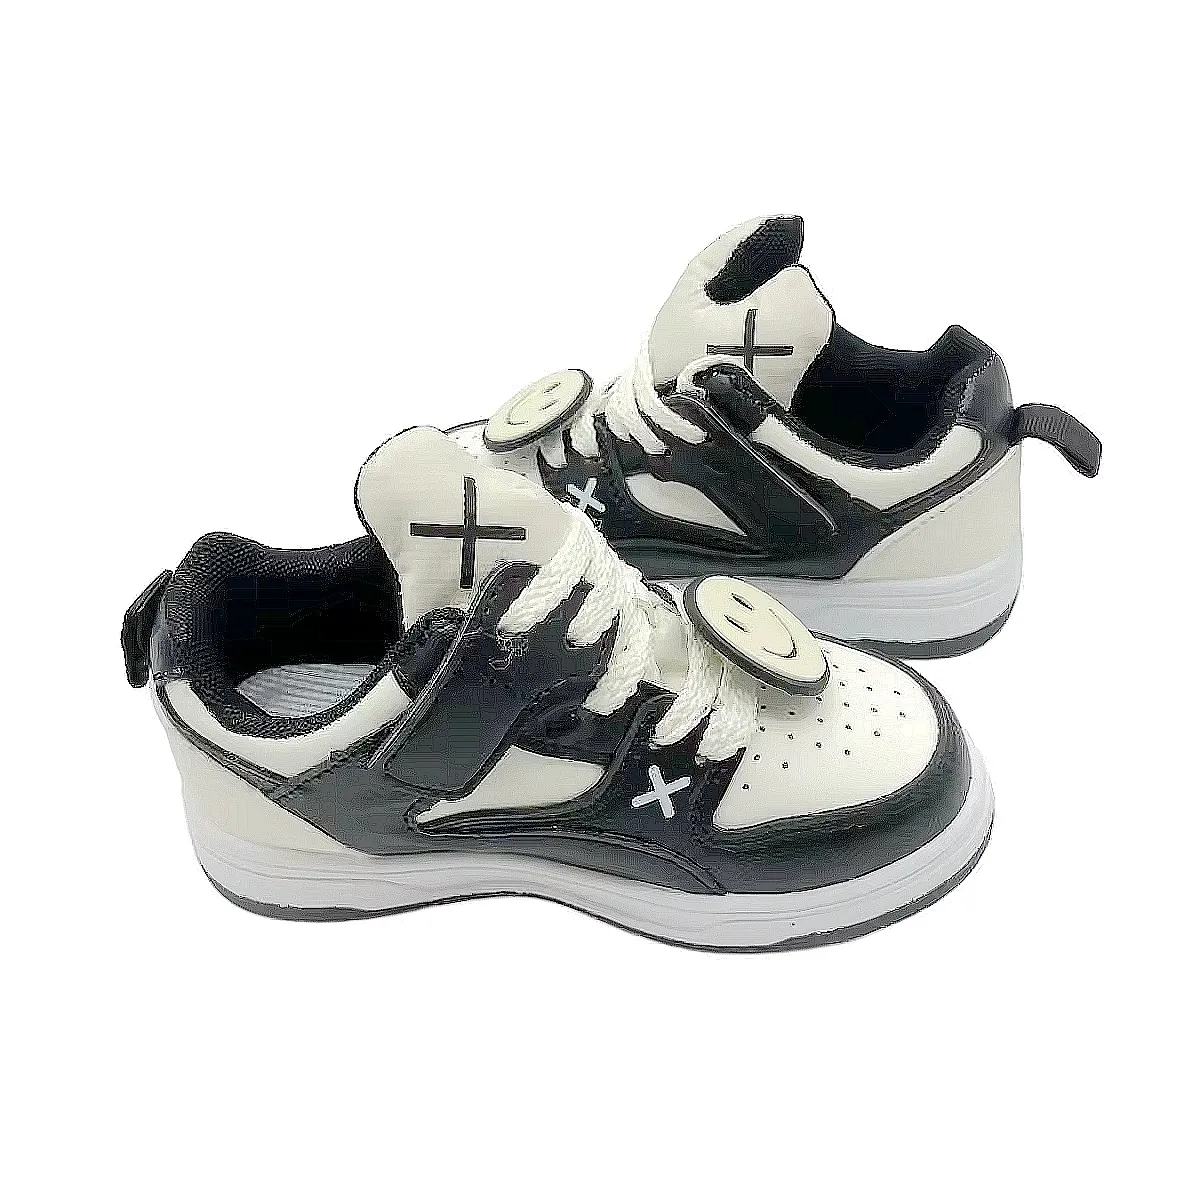 Çocuk rahat nefes alan günlük ayakkabılar yeni hafif kaymaz koşu ayakkabıları çocuk sneaker